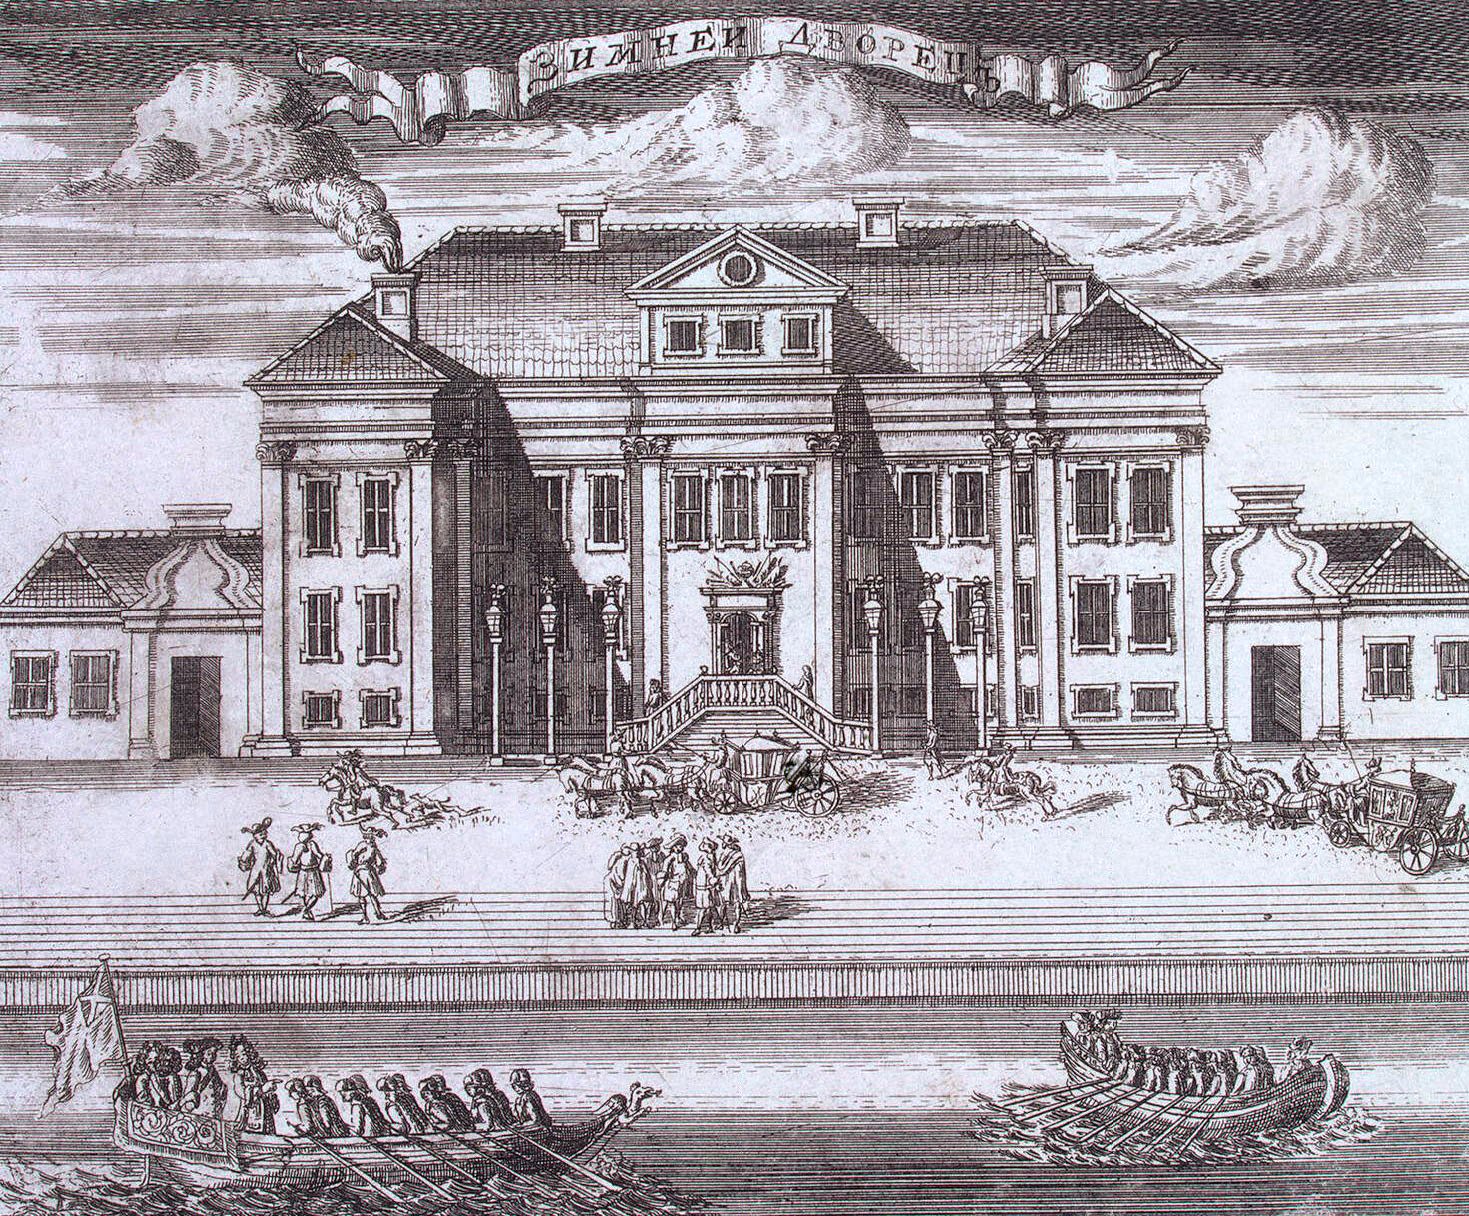 А. И. Ростовцев (?) "Зимний дворец Петра I". 1716-1717. Эрмитаж, Санкт-Петербург.